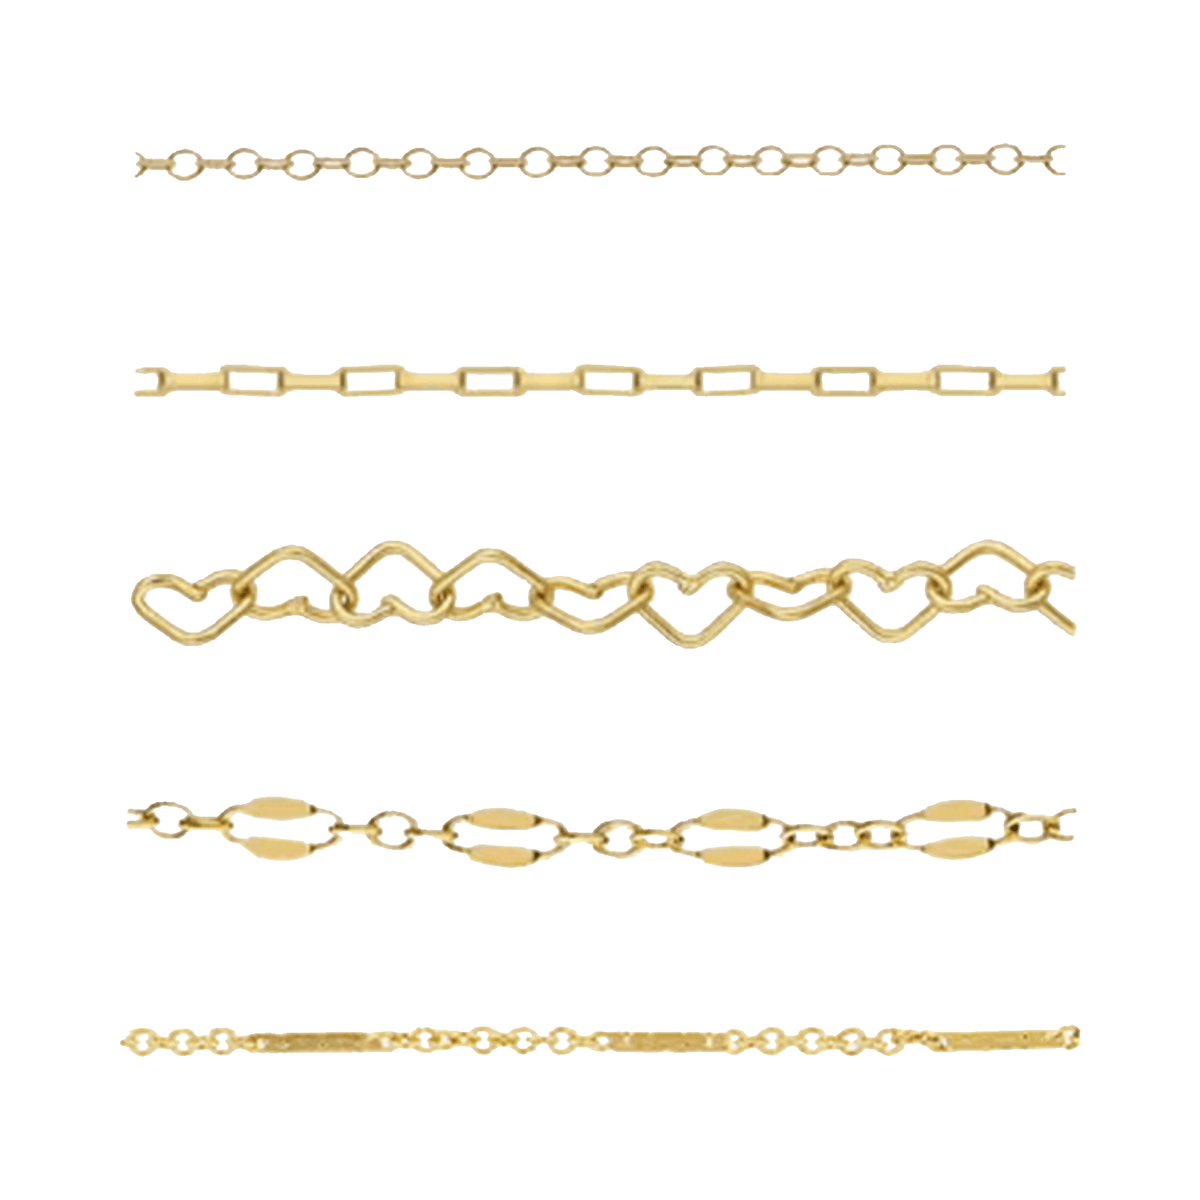 Permanent Welded Bracelet - Gold Filled